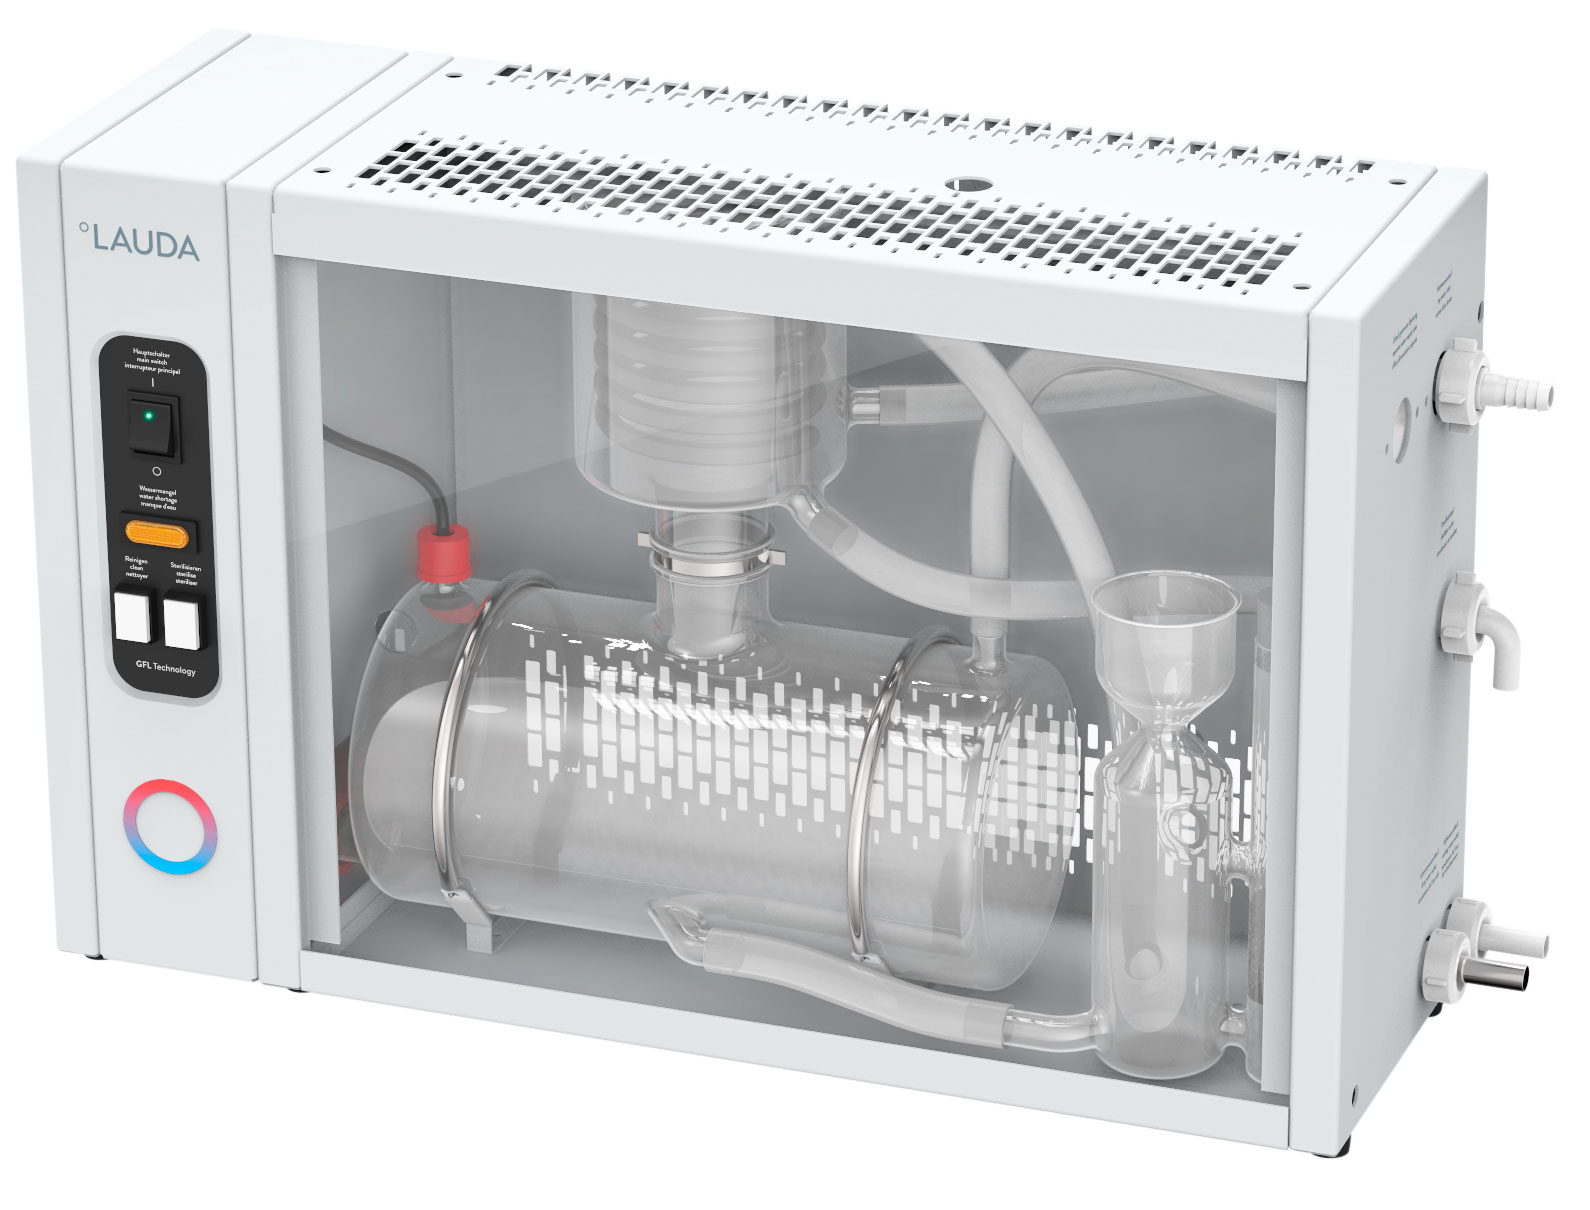 Destilador Puridest PD 4 G. LAUDA. Tipo de destilación: Mono. Material condensador: Vidrio. Rendimiento (L/h): 4. Conductancia etapa 1/2 (µS/cm): 2,2/-. Agua refrigeración consumida (l/min): 1,2. Dimensiones An x Al x Pr (mm): 650x390x200. Peso (kg): 17. Consumo (kW): 3